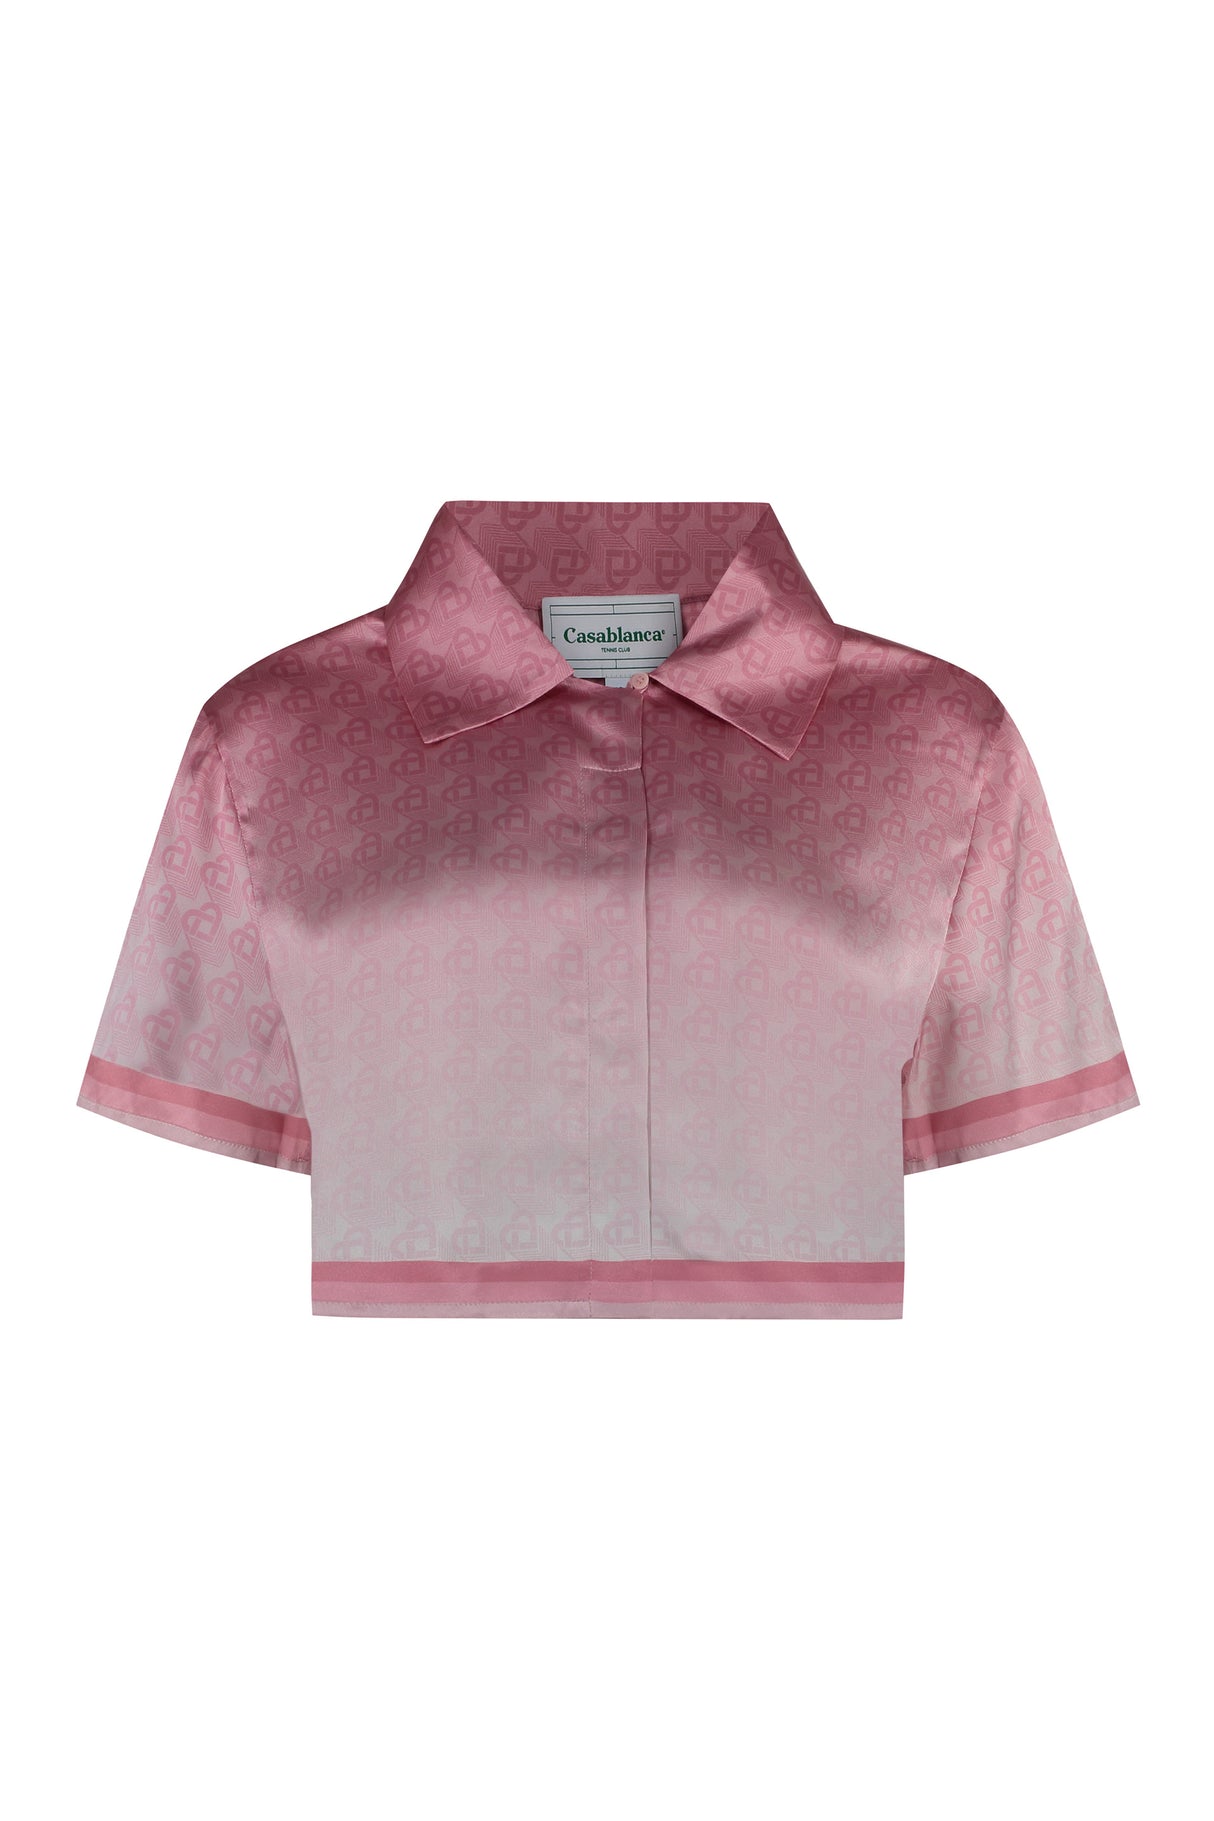 粉色印花絲質短上衣 - FW23系列